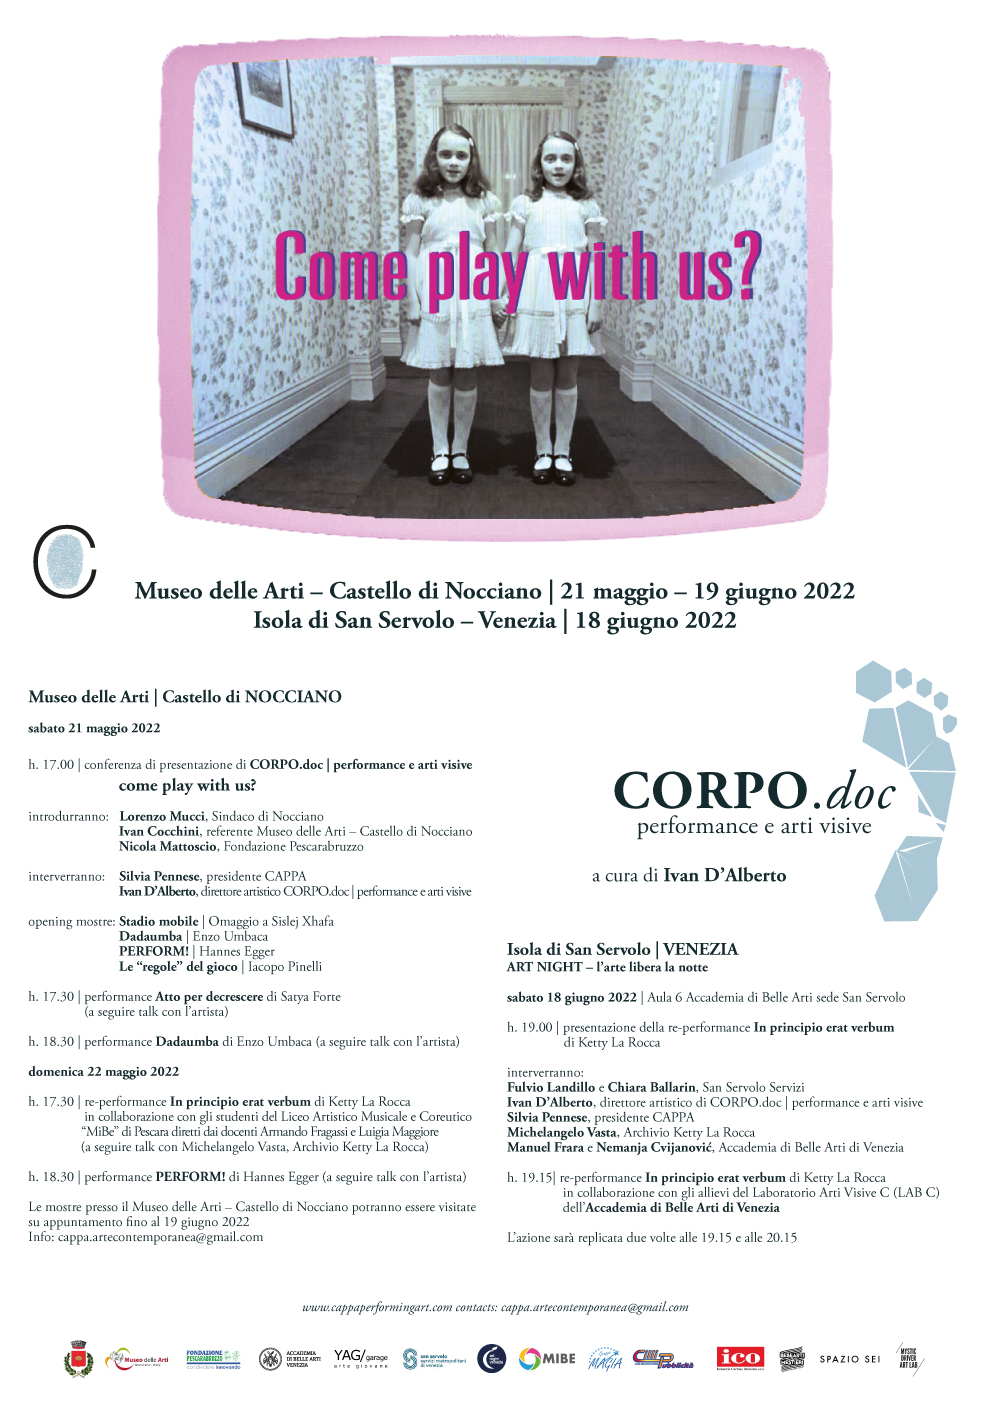 CORPO.doc | performance e arti visive